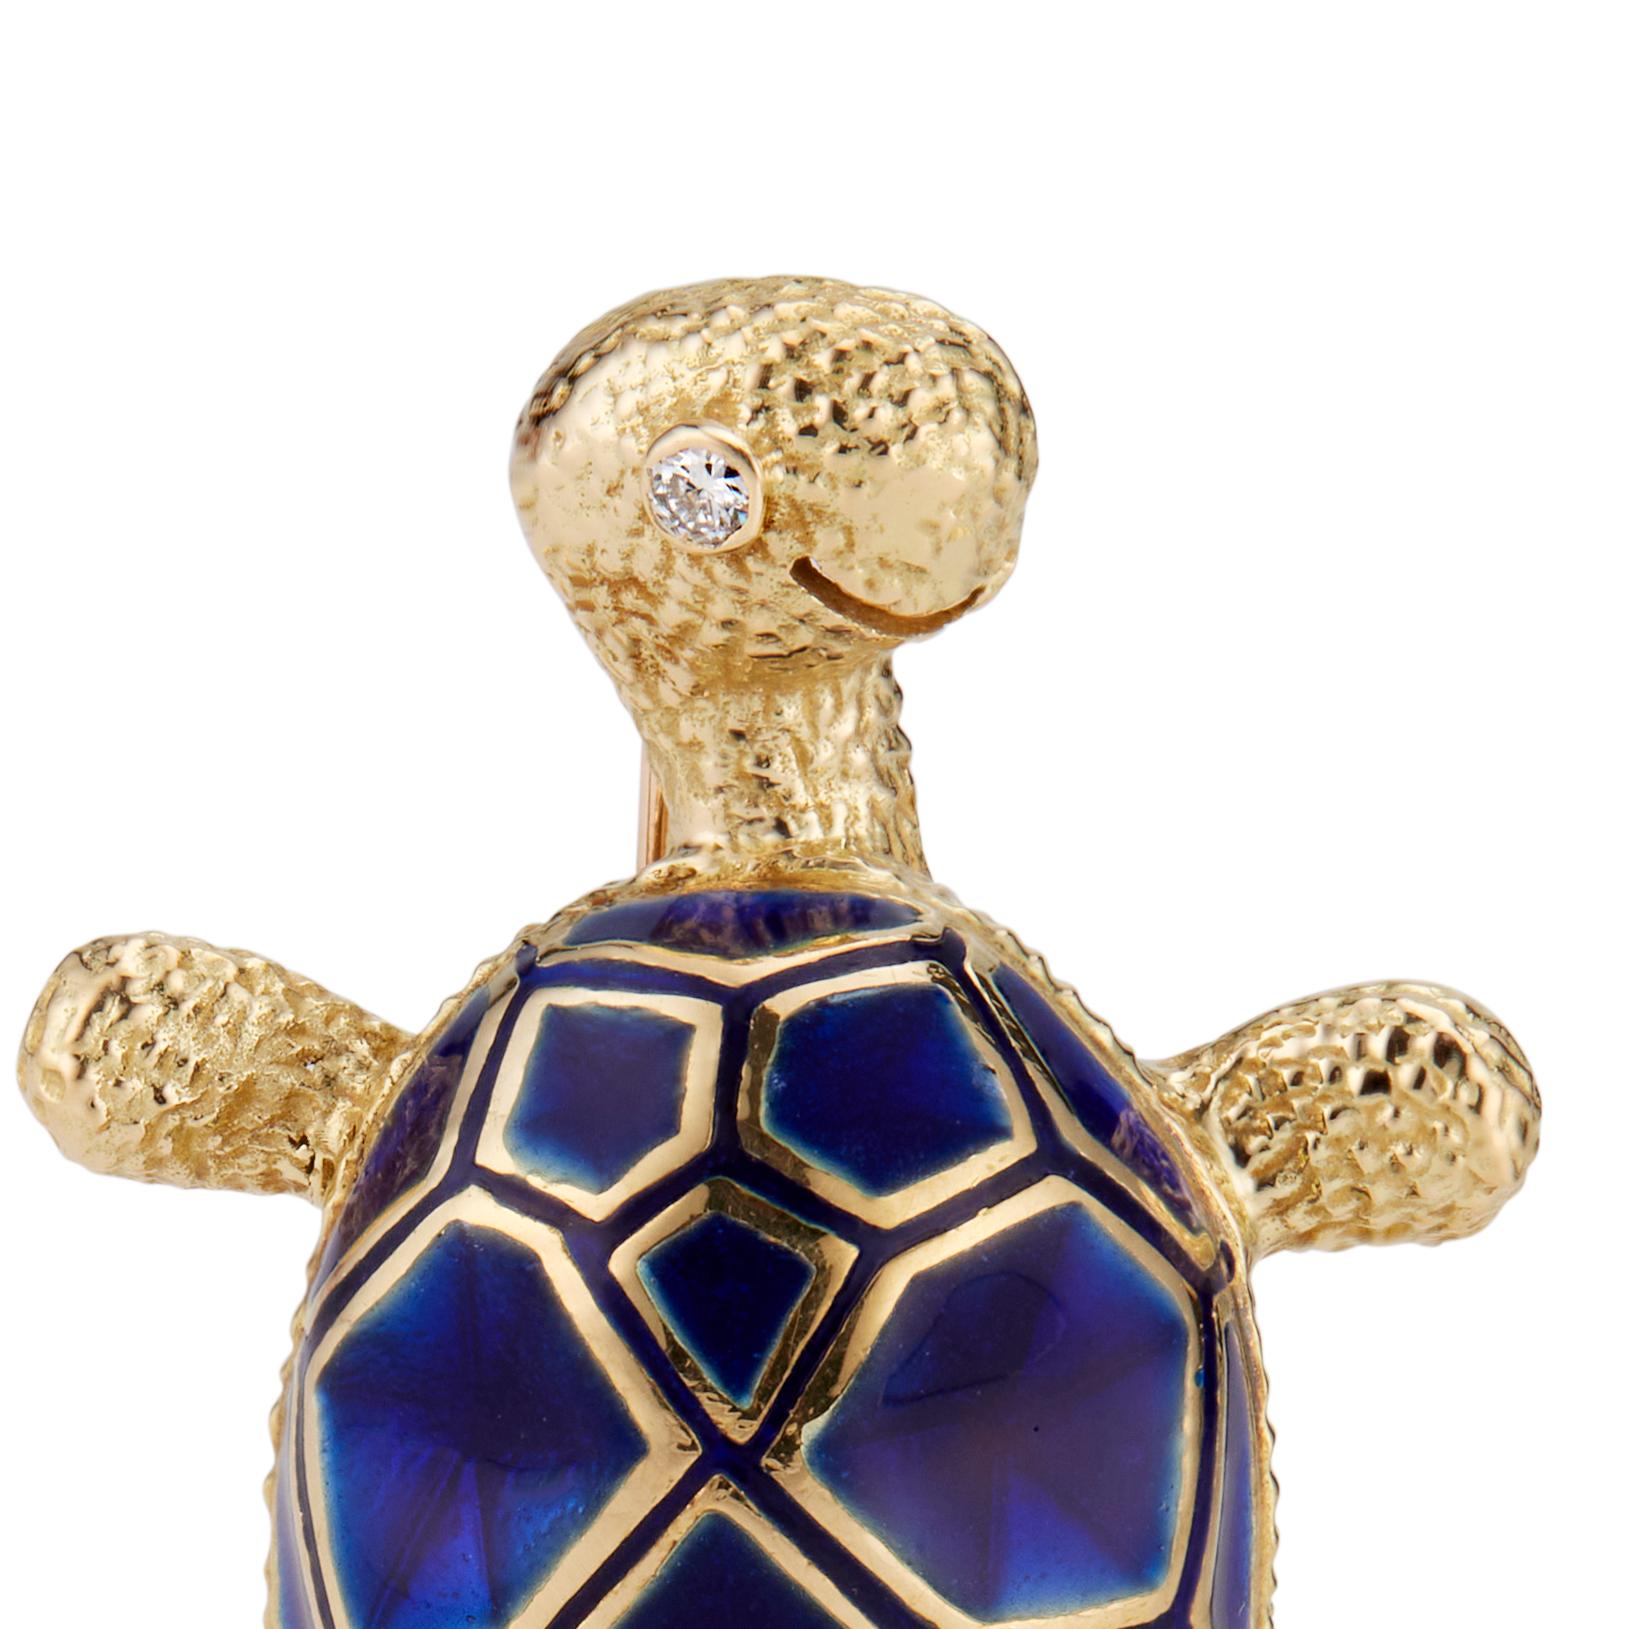 Blaue Emaille-Schildkröten-Brosche aus 18 Karat Gelbgold mit einem hellen Diamantauge im Vollschliff. 

1 runder Vollschliff-Diamant, Gesamtgewicht ca. 0,03cts, G, SI1
18k Gelbgold
Geprüft und gestempelt: 18k
Punze: PL ©
9.6 Gramm
Von oben nach